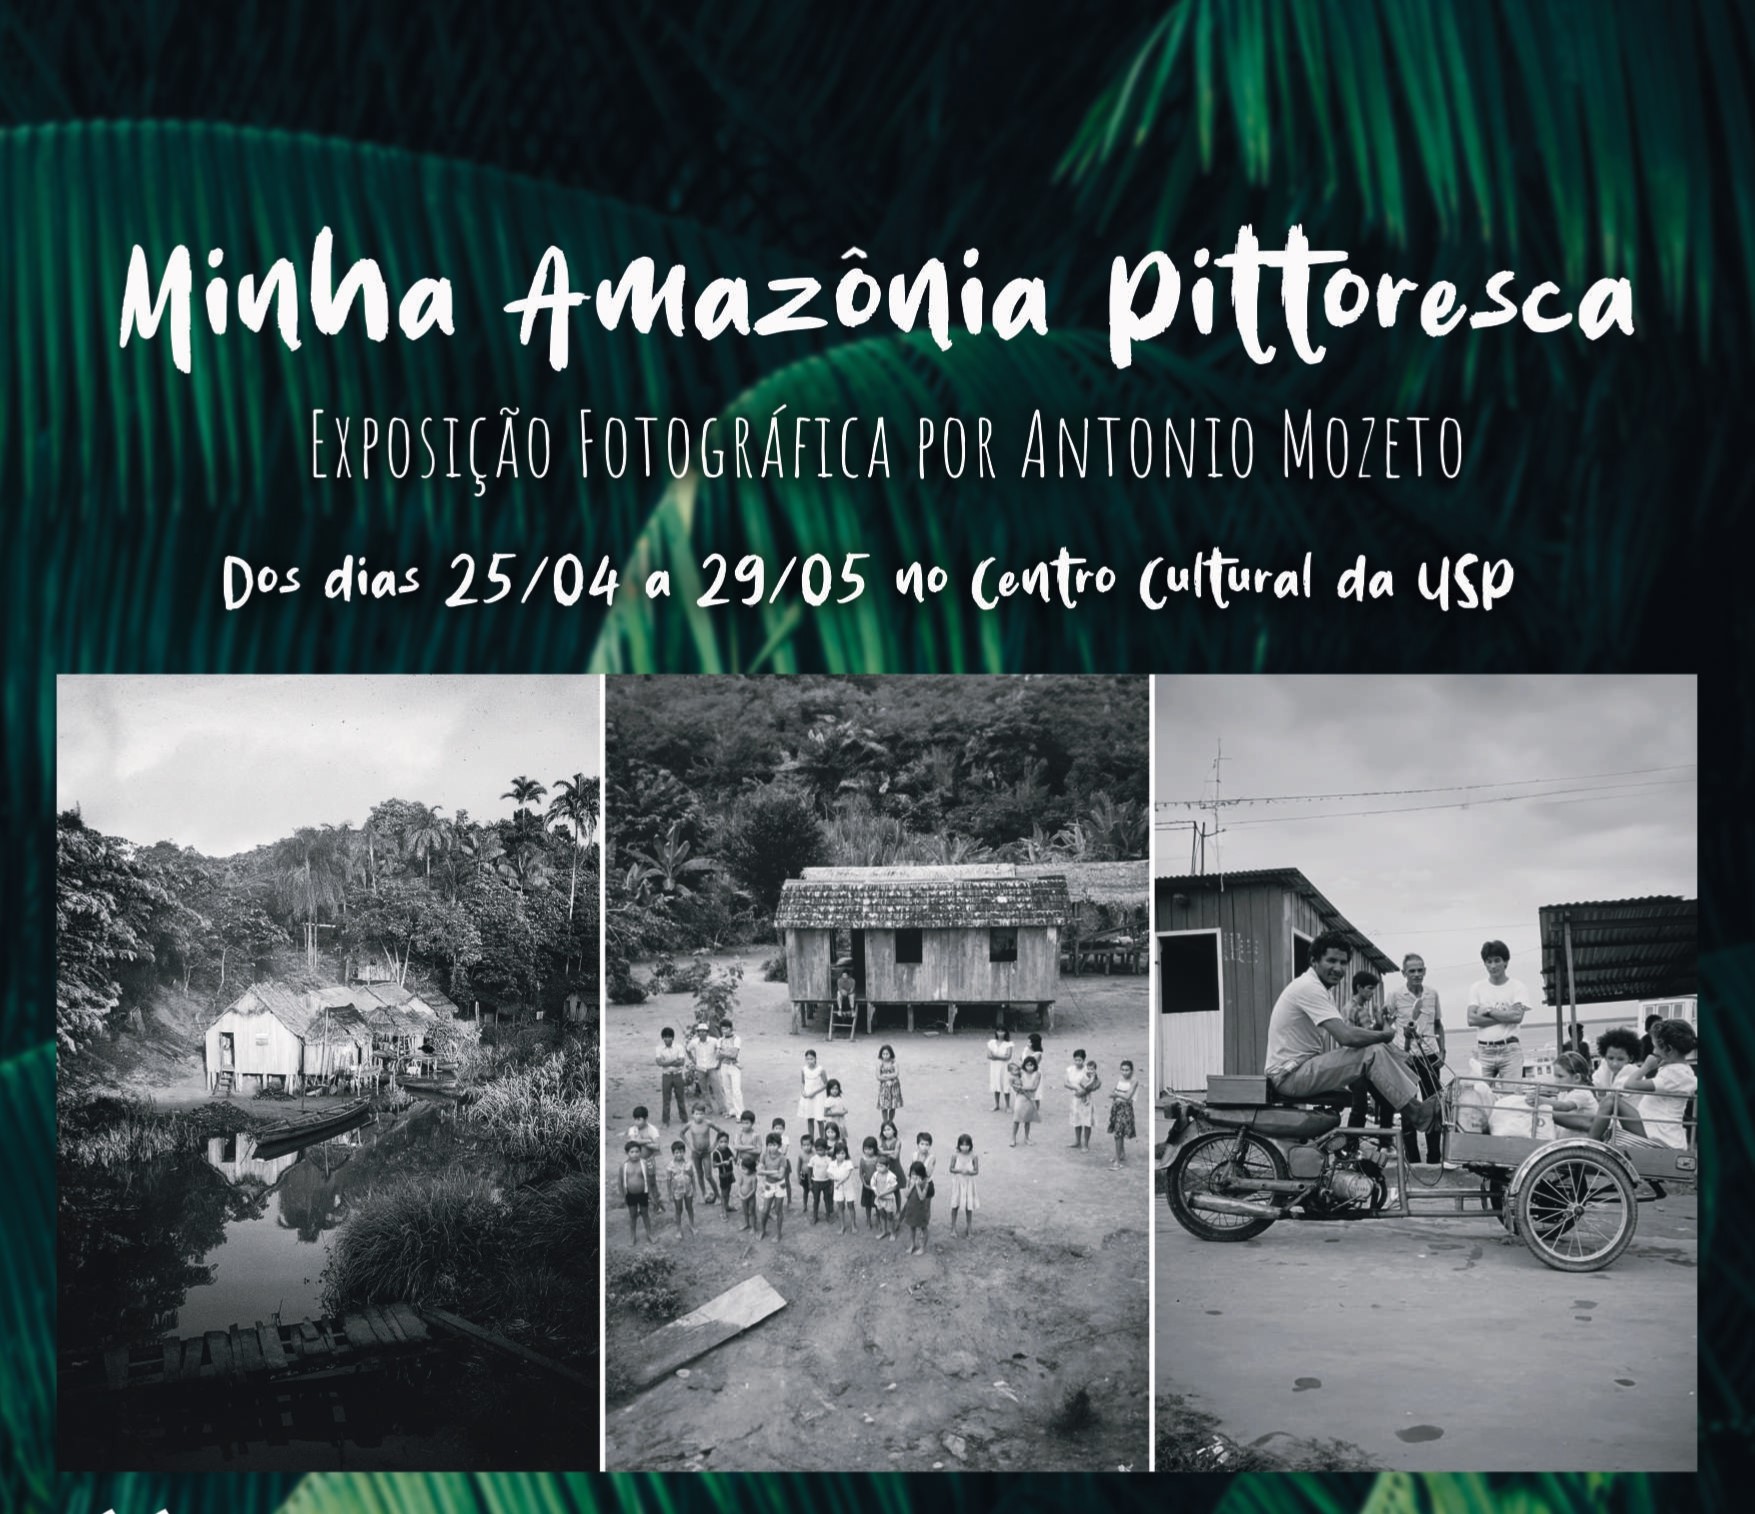 Exposição fotográfica “Minha Amazônia Pittoresca” no Centro Cultural da USP.